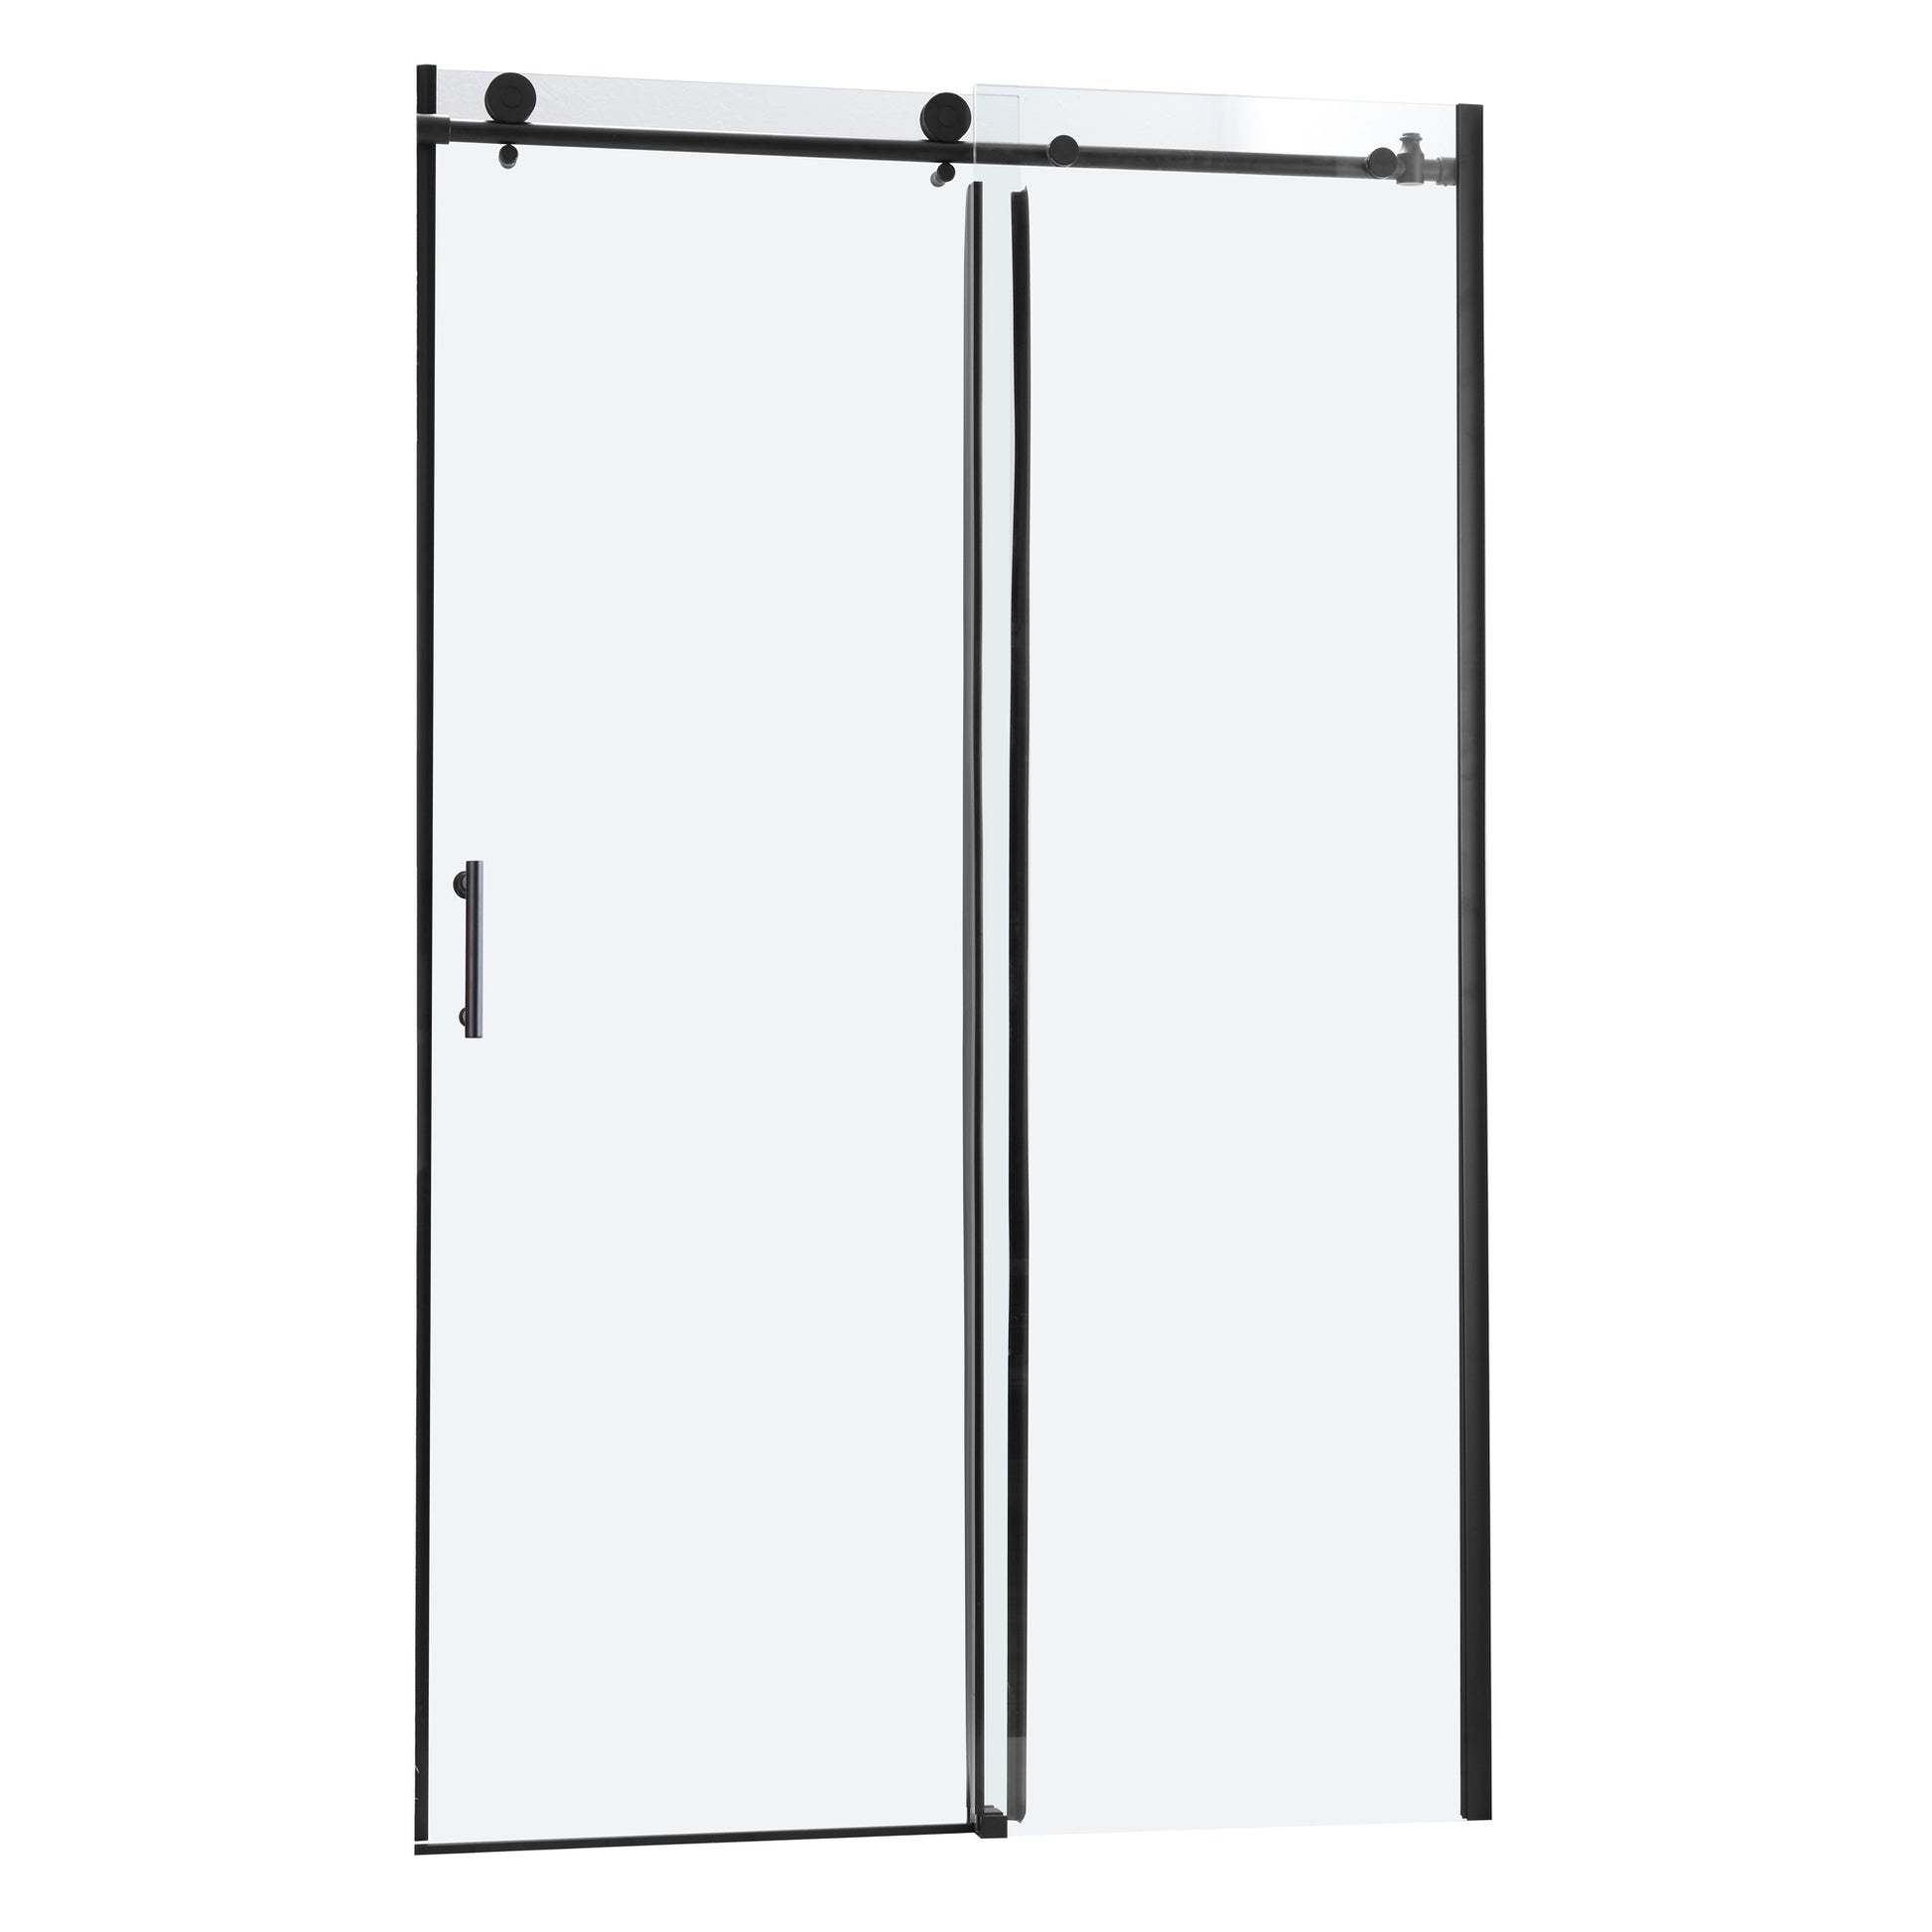 Shower Door 48" W x 76"H Single Sliding Bypass Shower matte black-glass